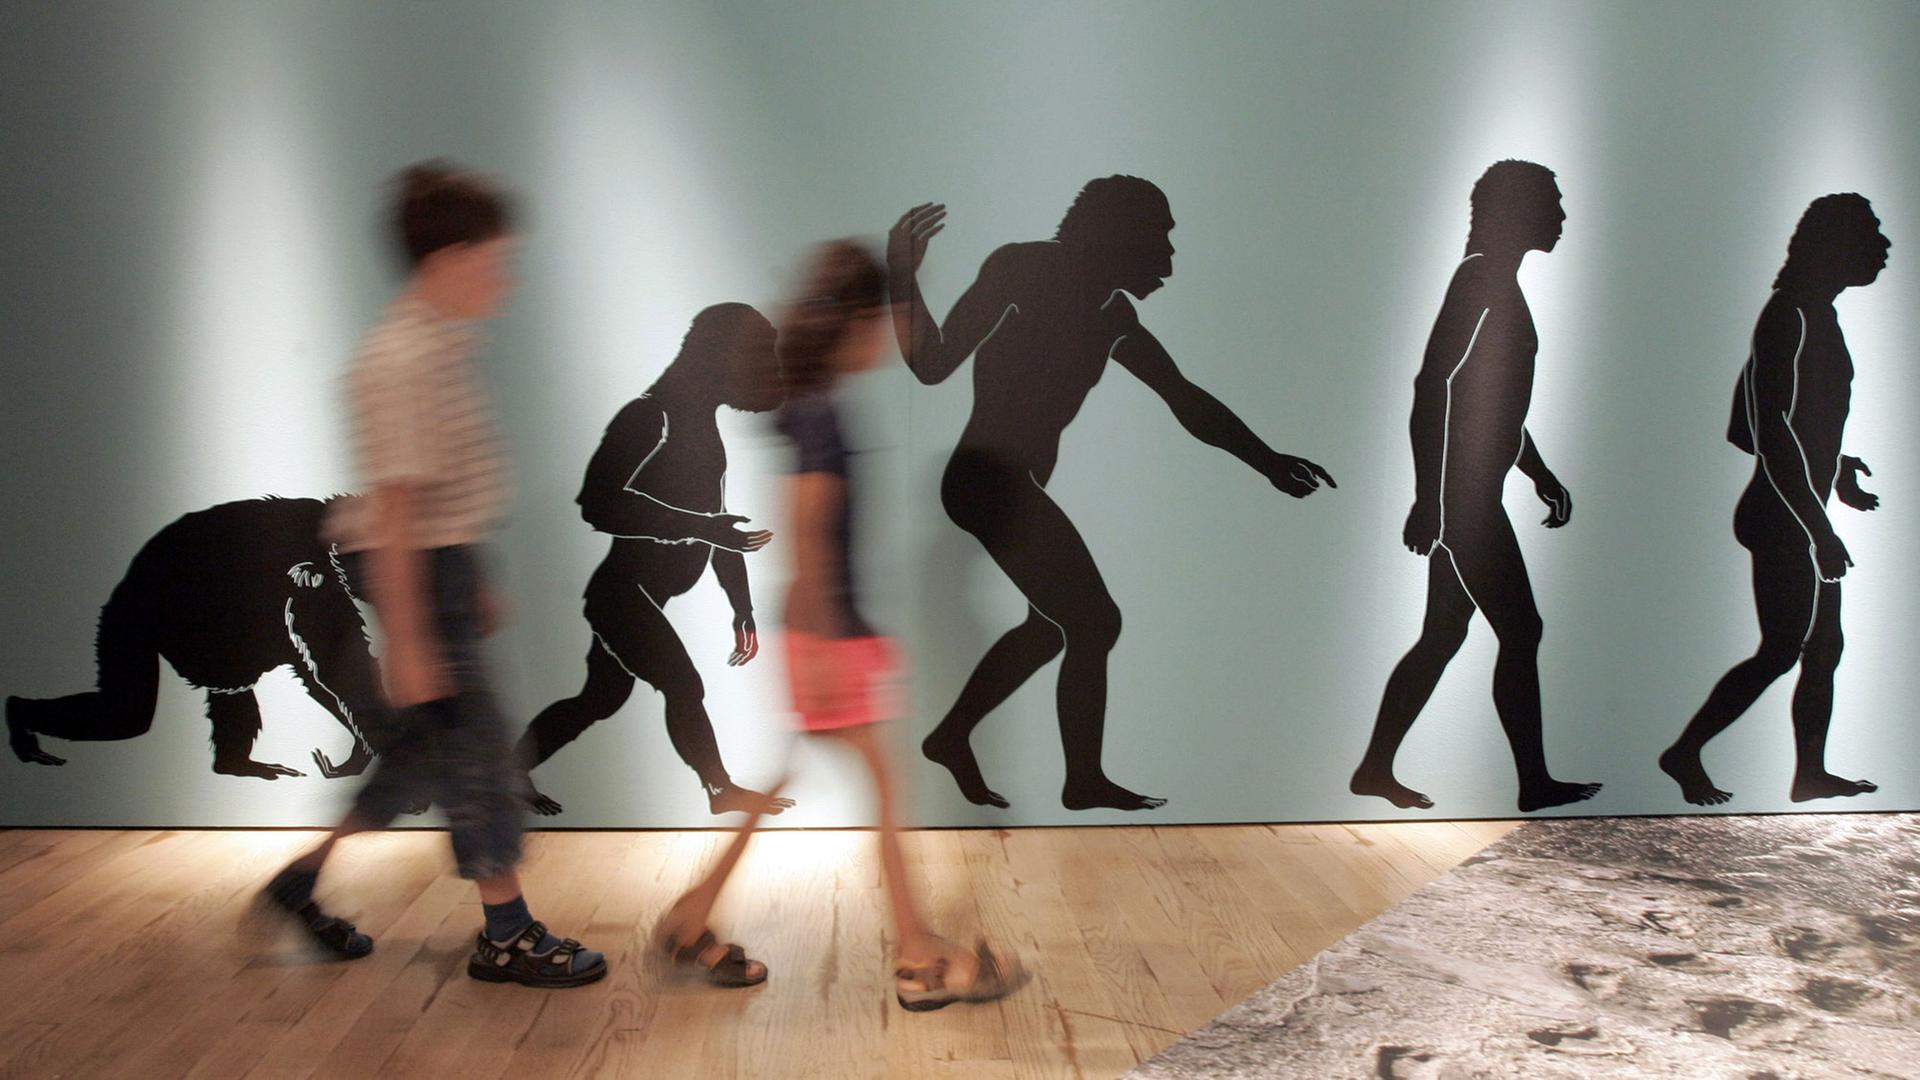 In der Ausstellung "ROOTS / Wurzeln der Menschheit" laufen zwei jugendliche Besucher am Donnerstag (06.07.2006) im Rheinischen LandesMuseum in Bonn an einer Plakatwand vorbei, die den Evolutionsverlauf zum Homo Sapiens beschreibt.